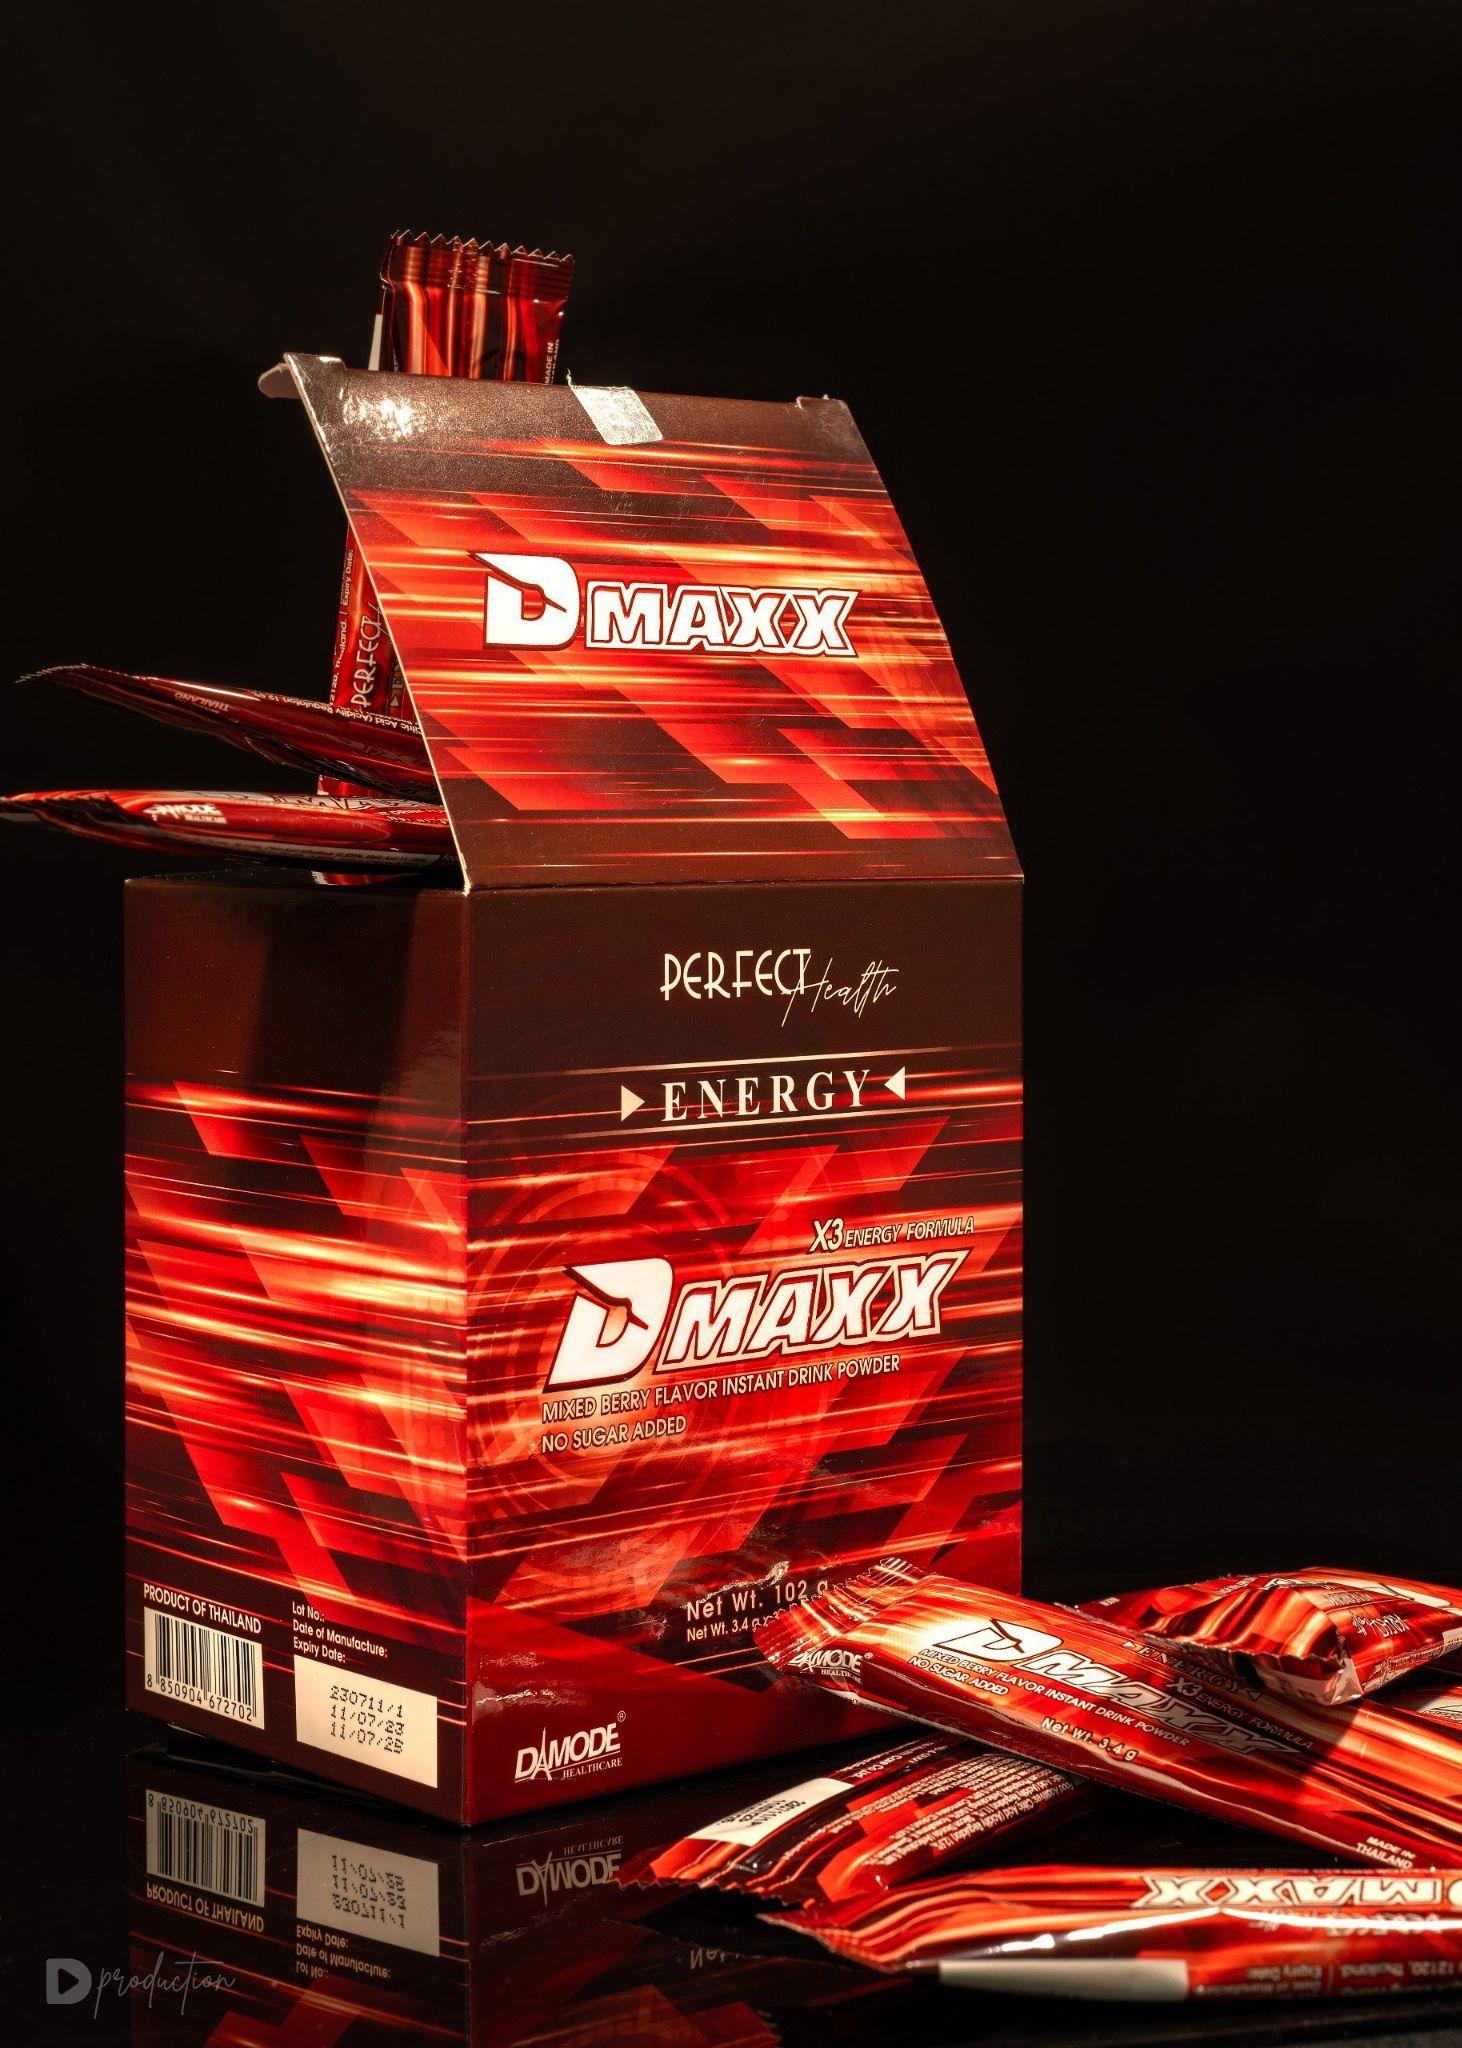 Dmaxx - Thức uống năng lượng đang gây sốt với công dụng cực đỉnh - Ảnh 2.